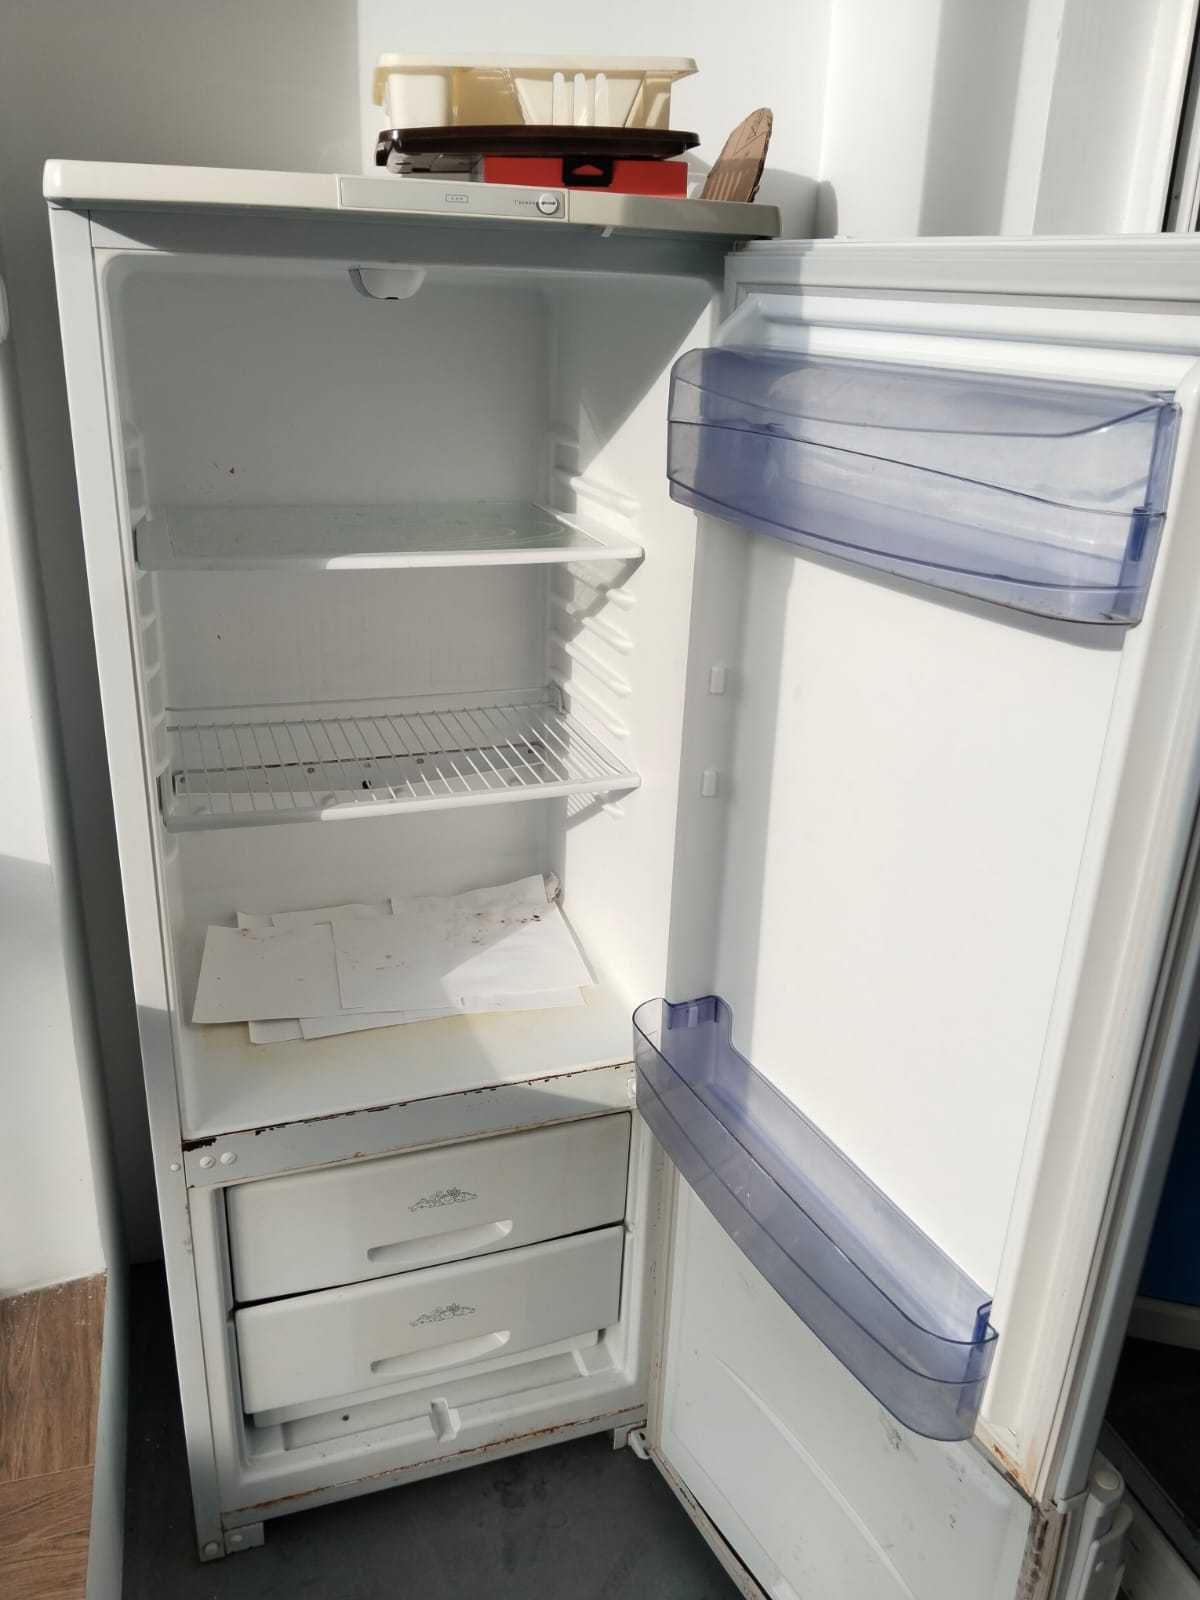 Продается холодильник Бирюса